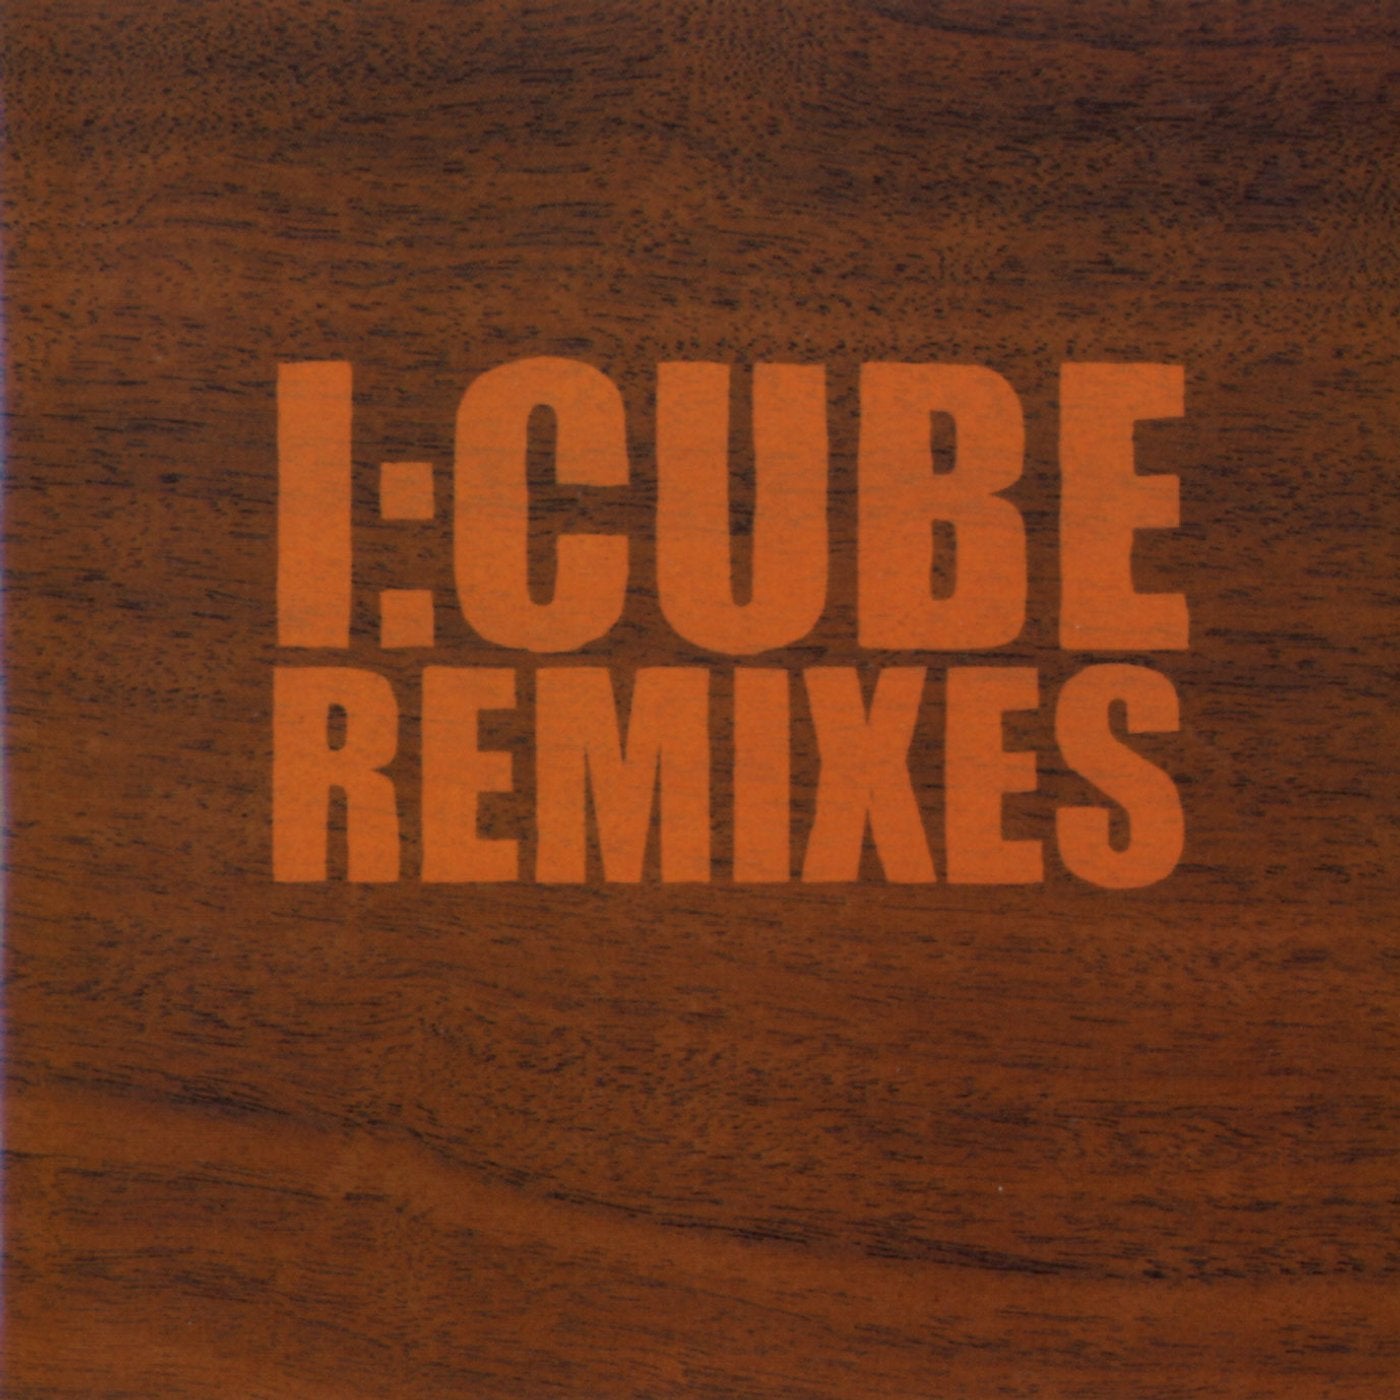 Cube remix. I Cube.